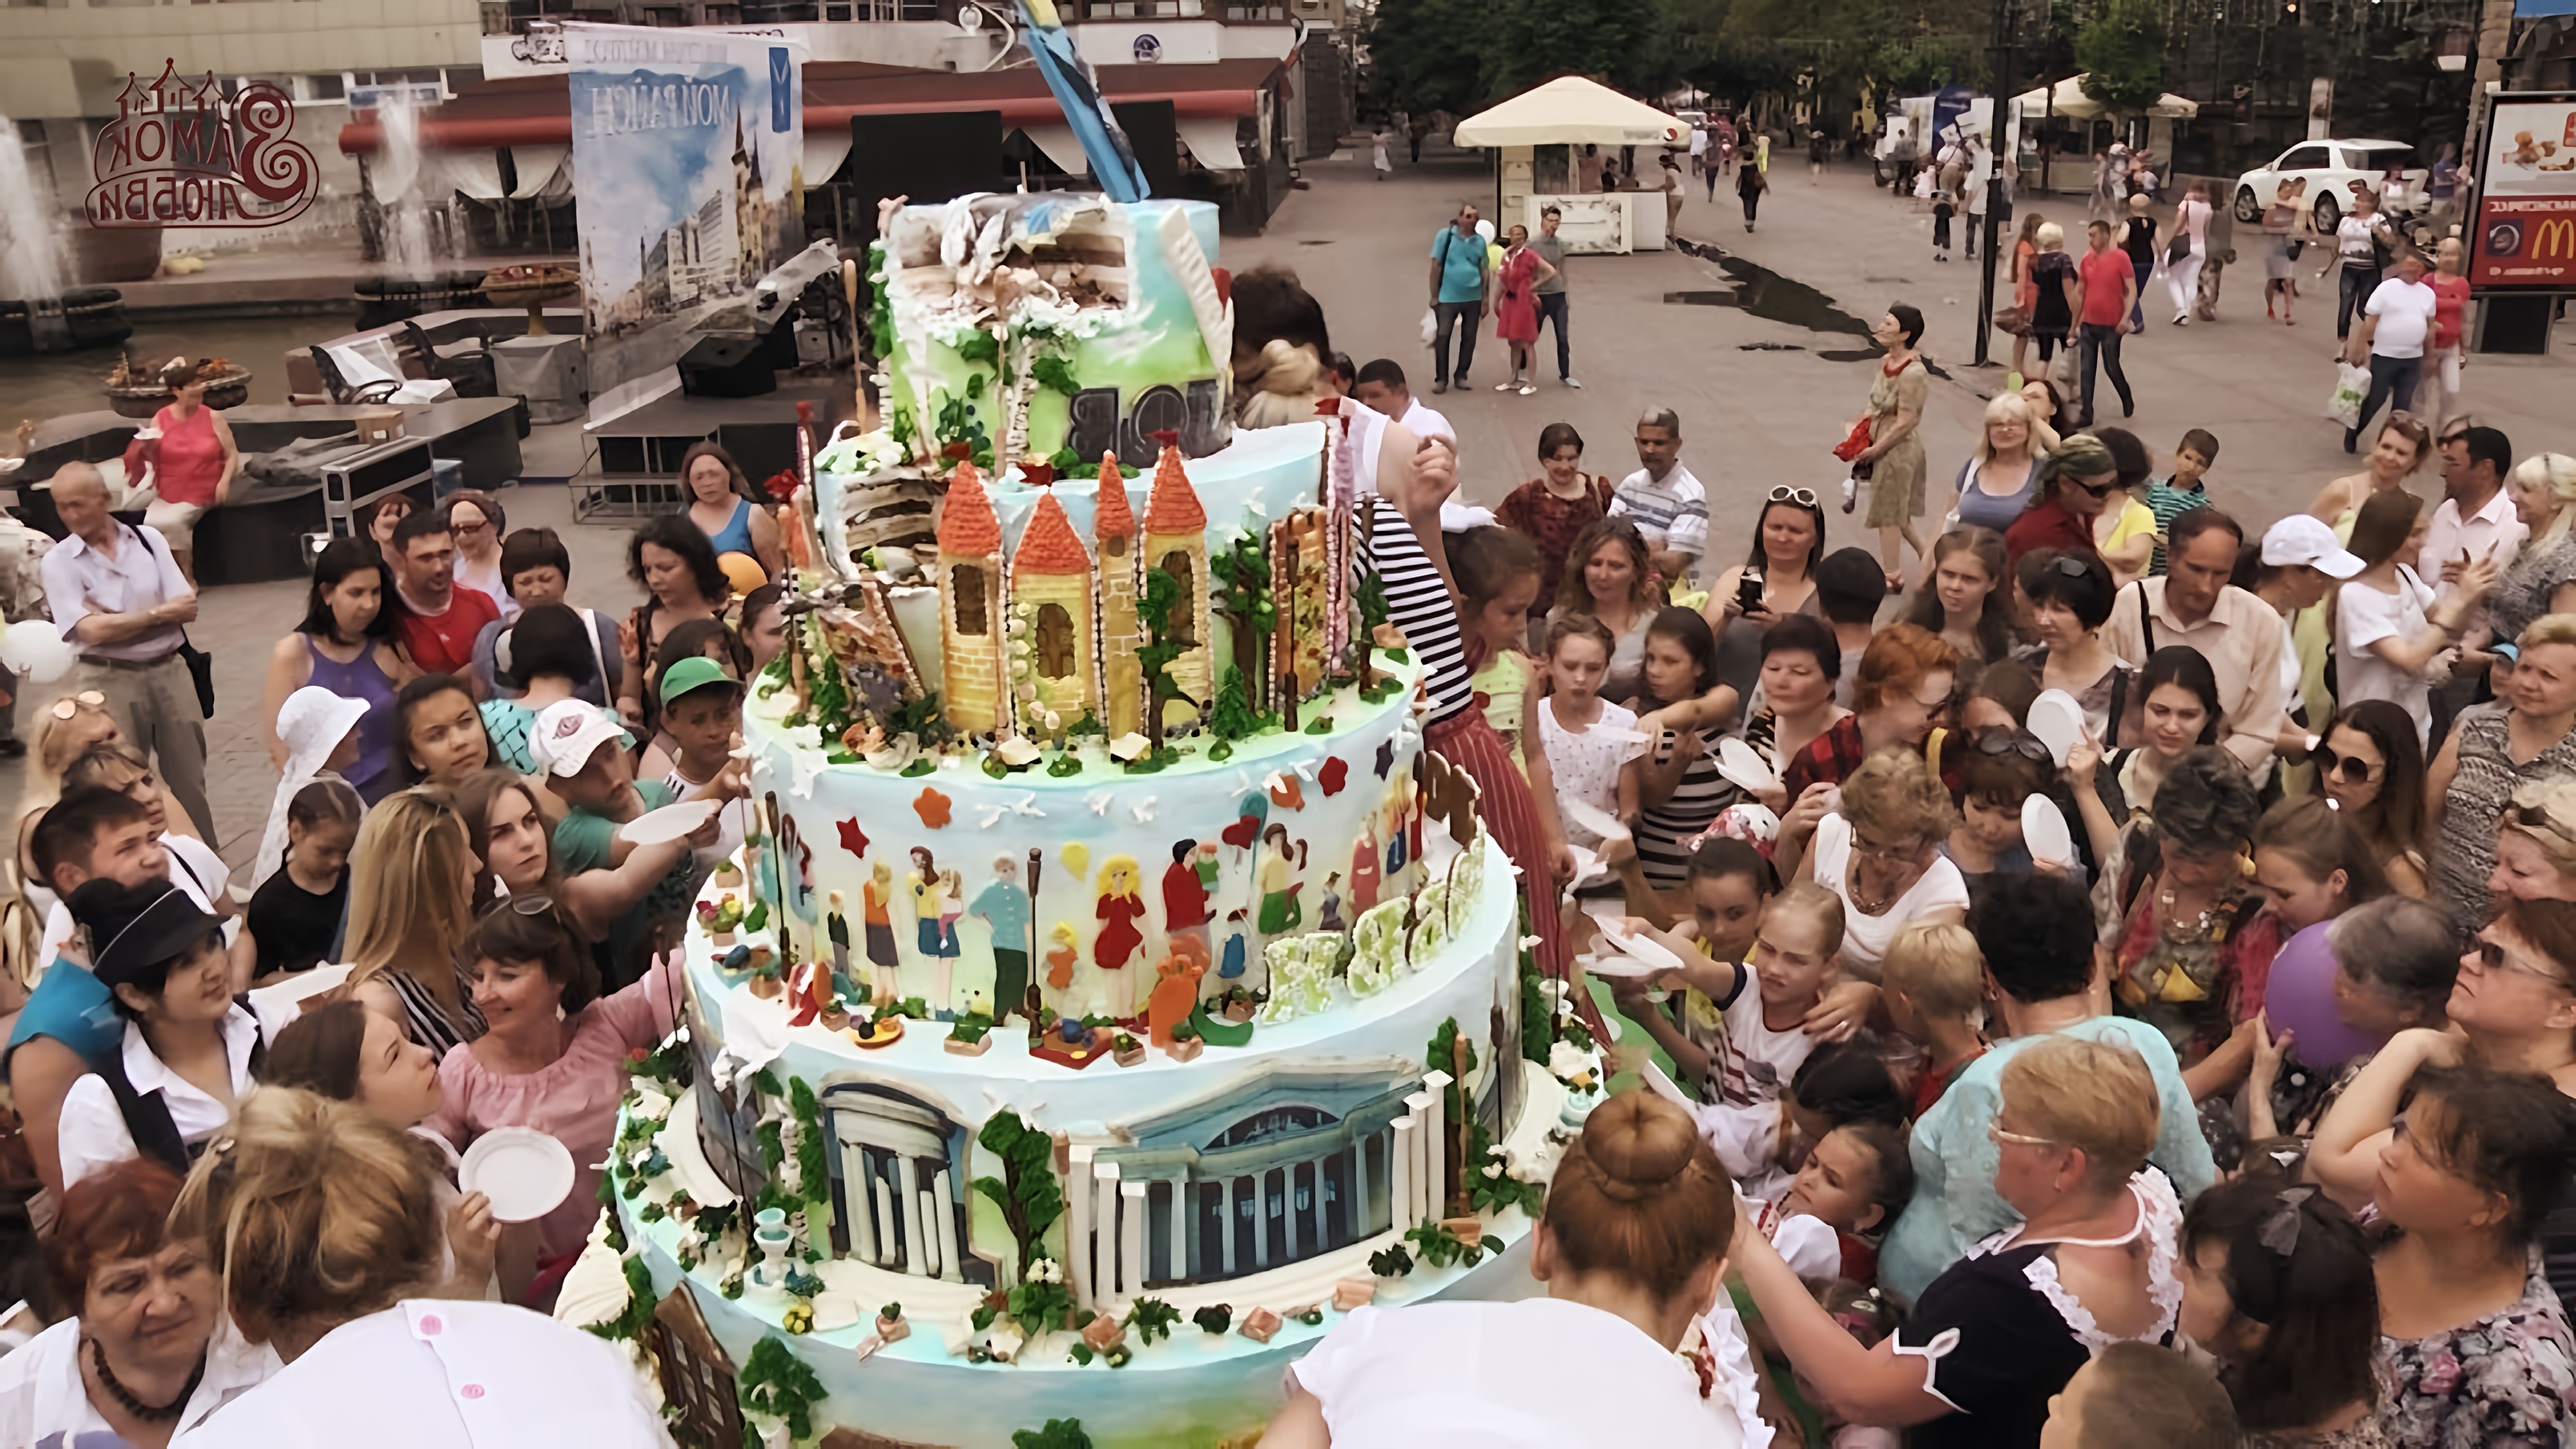 Самый большой торт "Замок Любви" - это видео-ролик, который демонстрирует создание огромного торта в форме замка